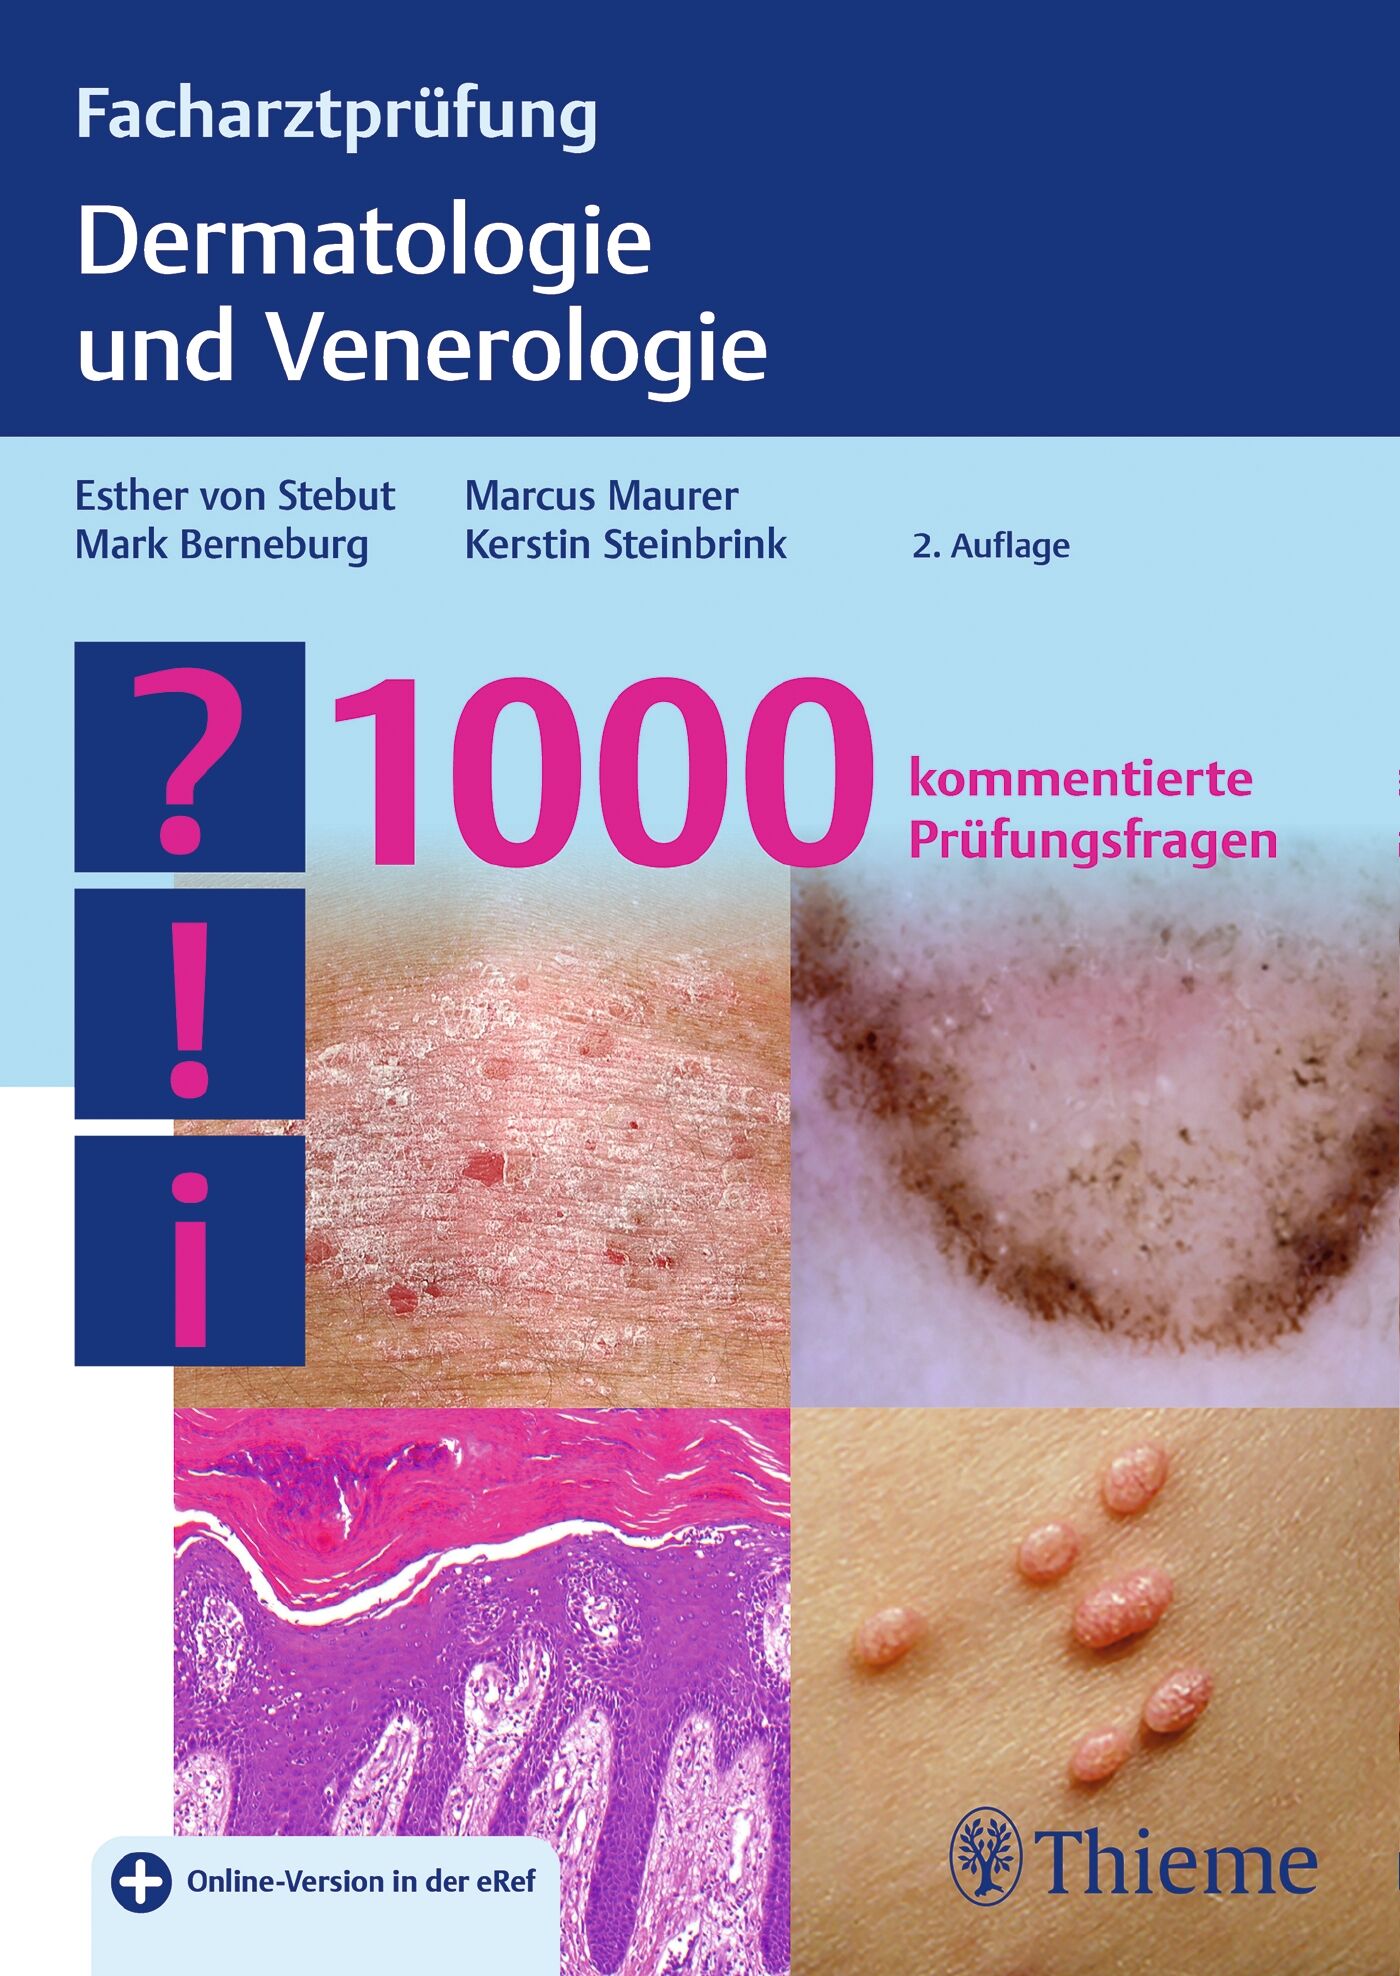 Facharztprüfung Dermatologie und Venerologie, 9783132428164